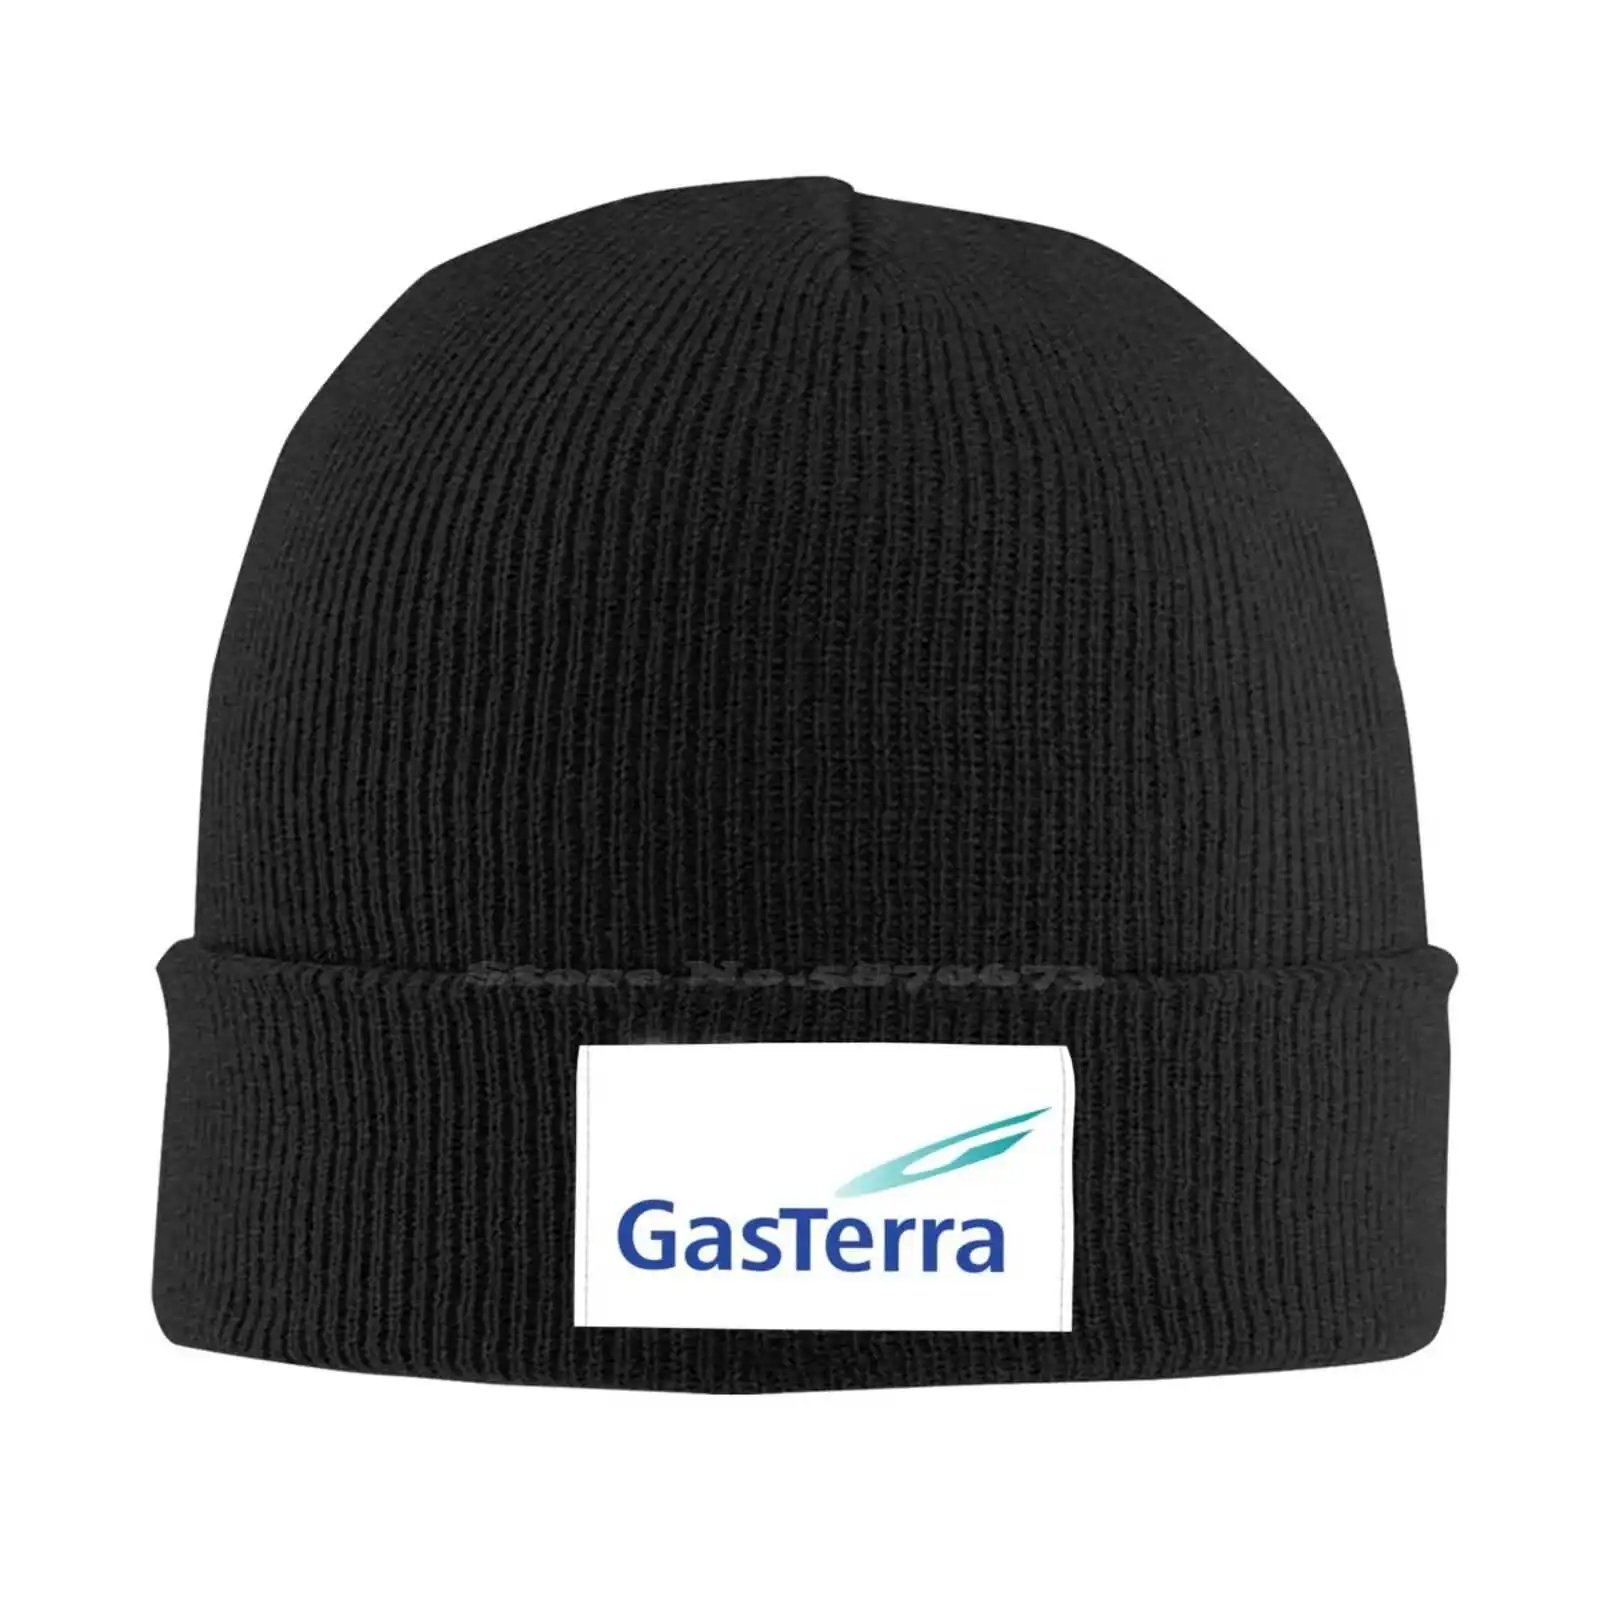 

Повседневная бейсбольная кепка GasTerra с принтом логотипа